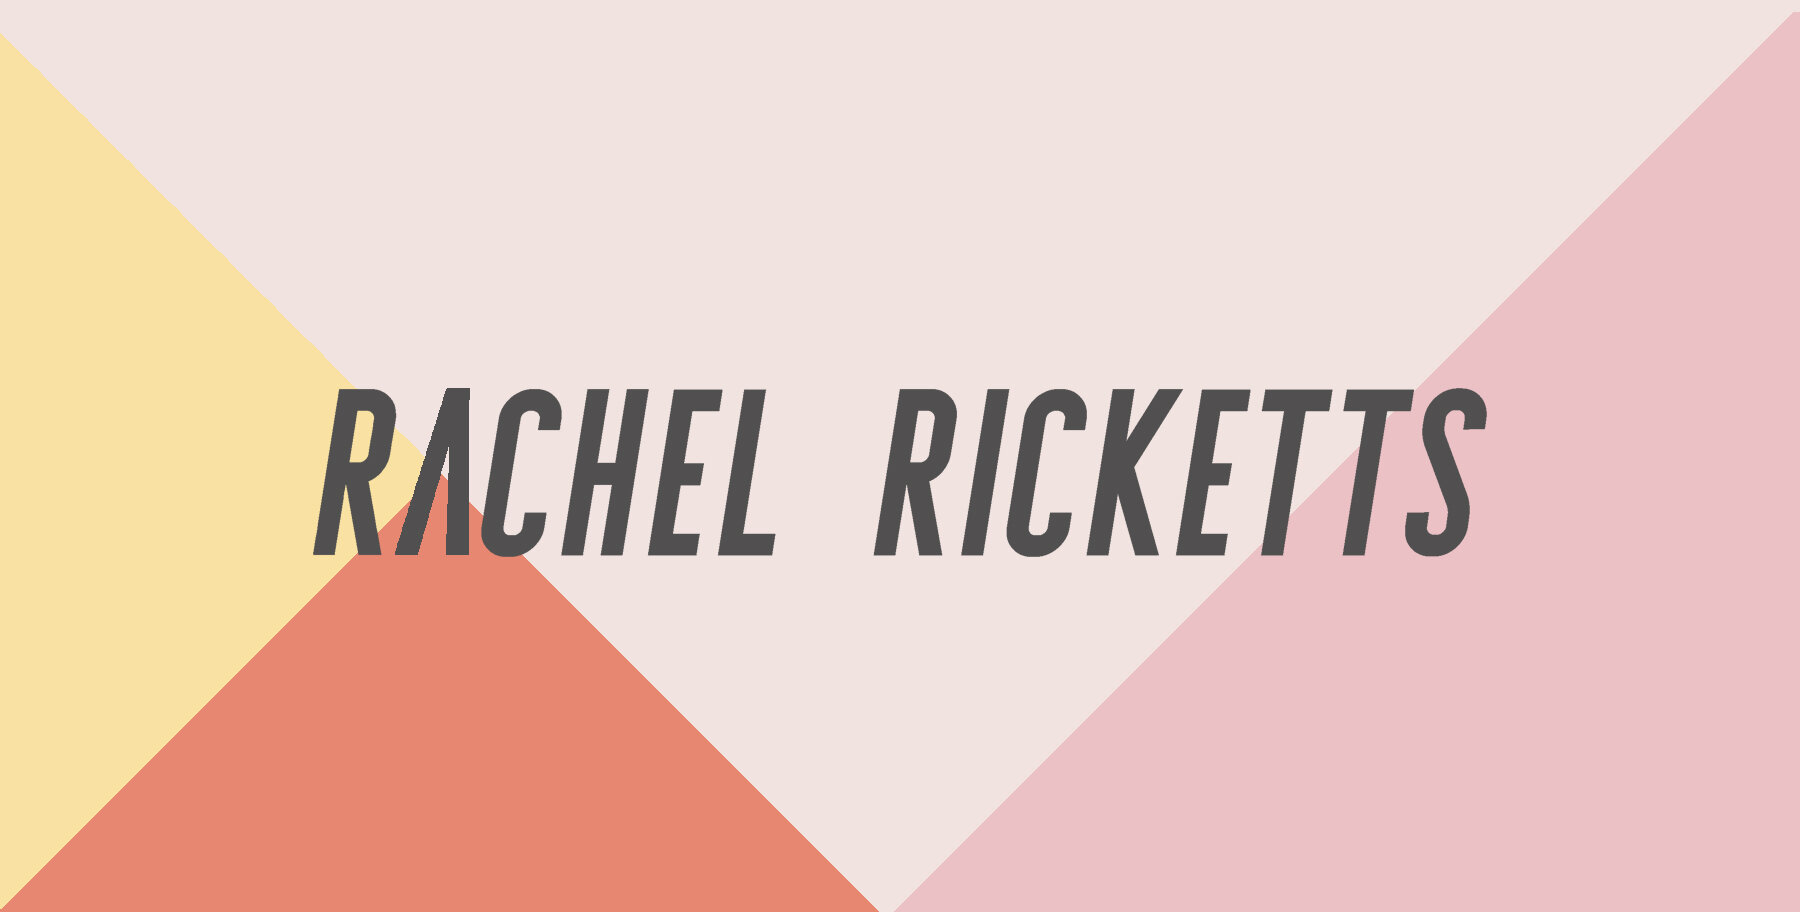 Rachel Ricketts fogyás költsége